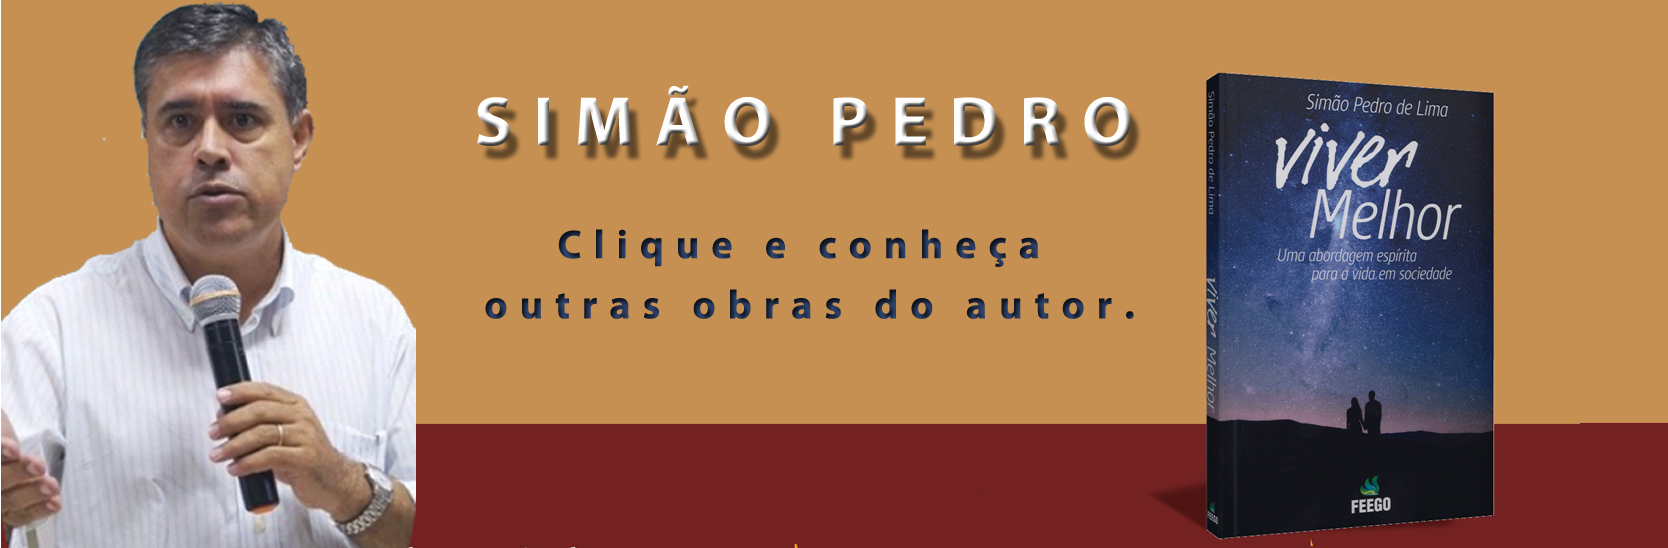 Simão Pedro Lima